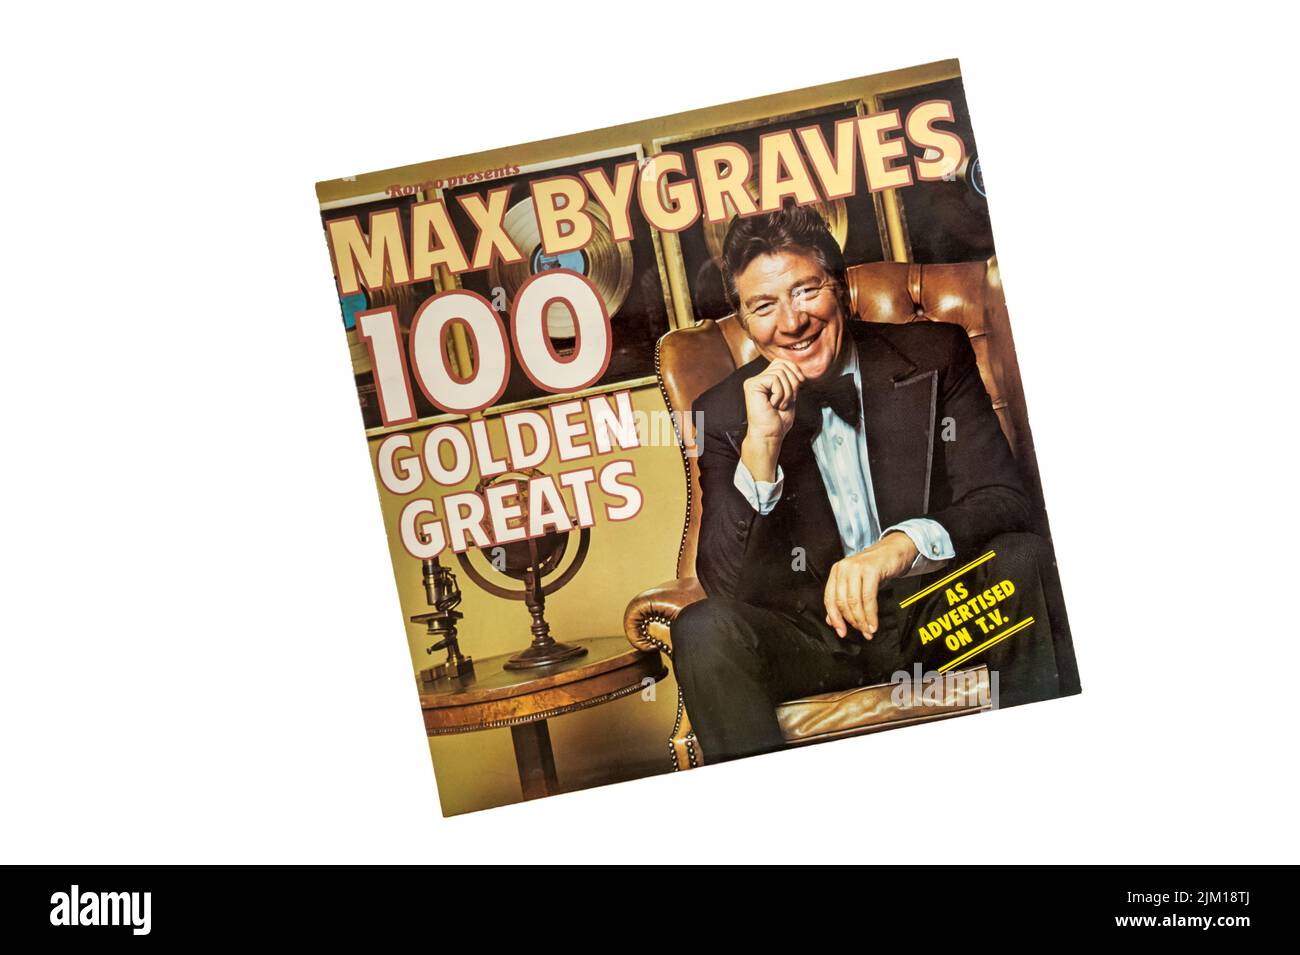 Max Bygraves 100 Golden Greats lanzado por Ronco en 1976. Foto de stock